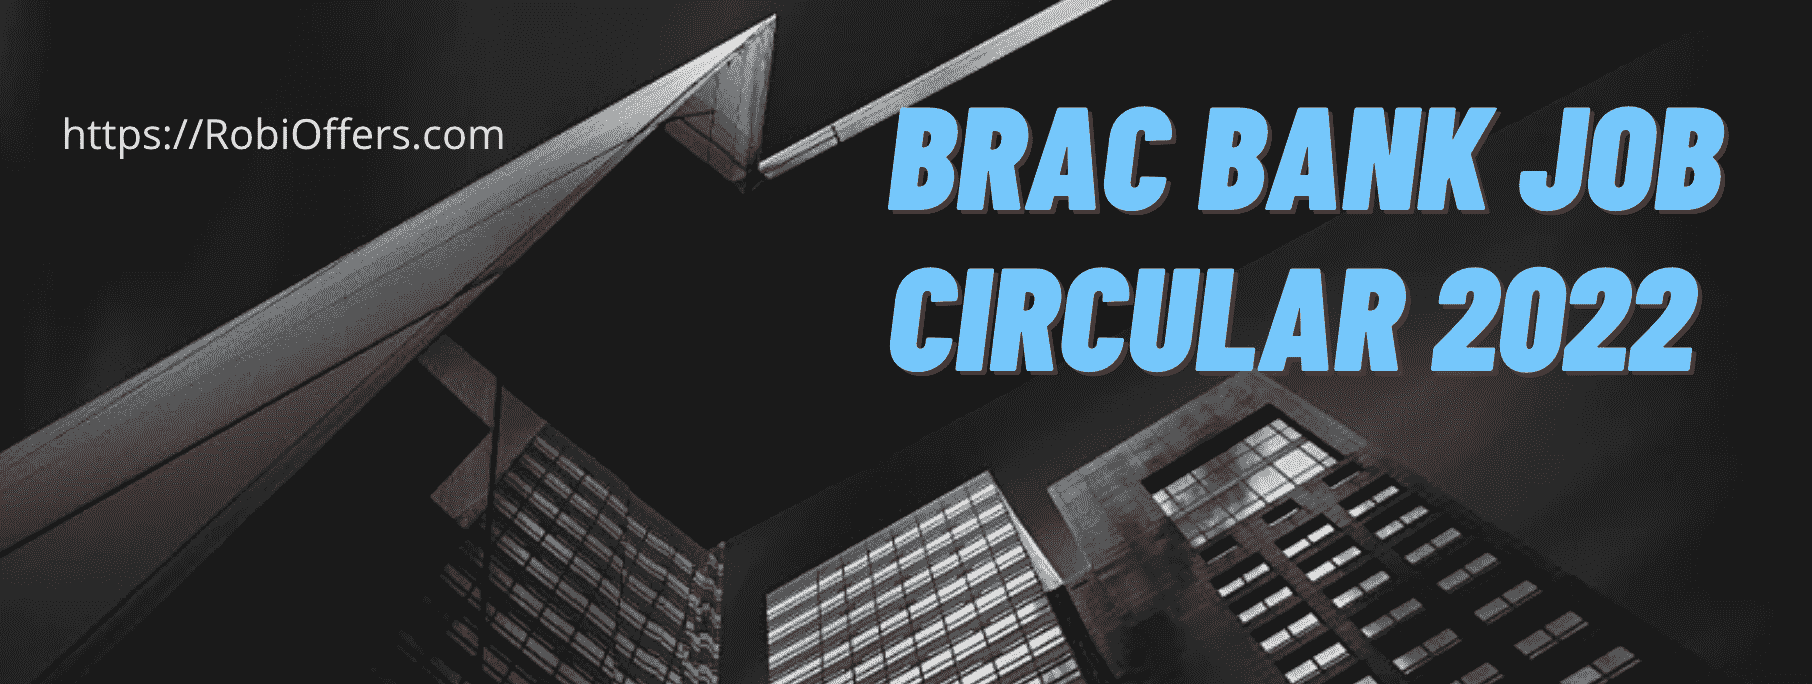 BRAC Bank Job Circular 2022 